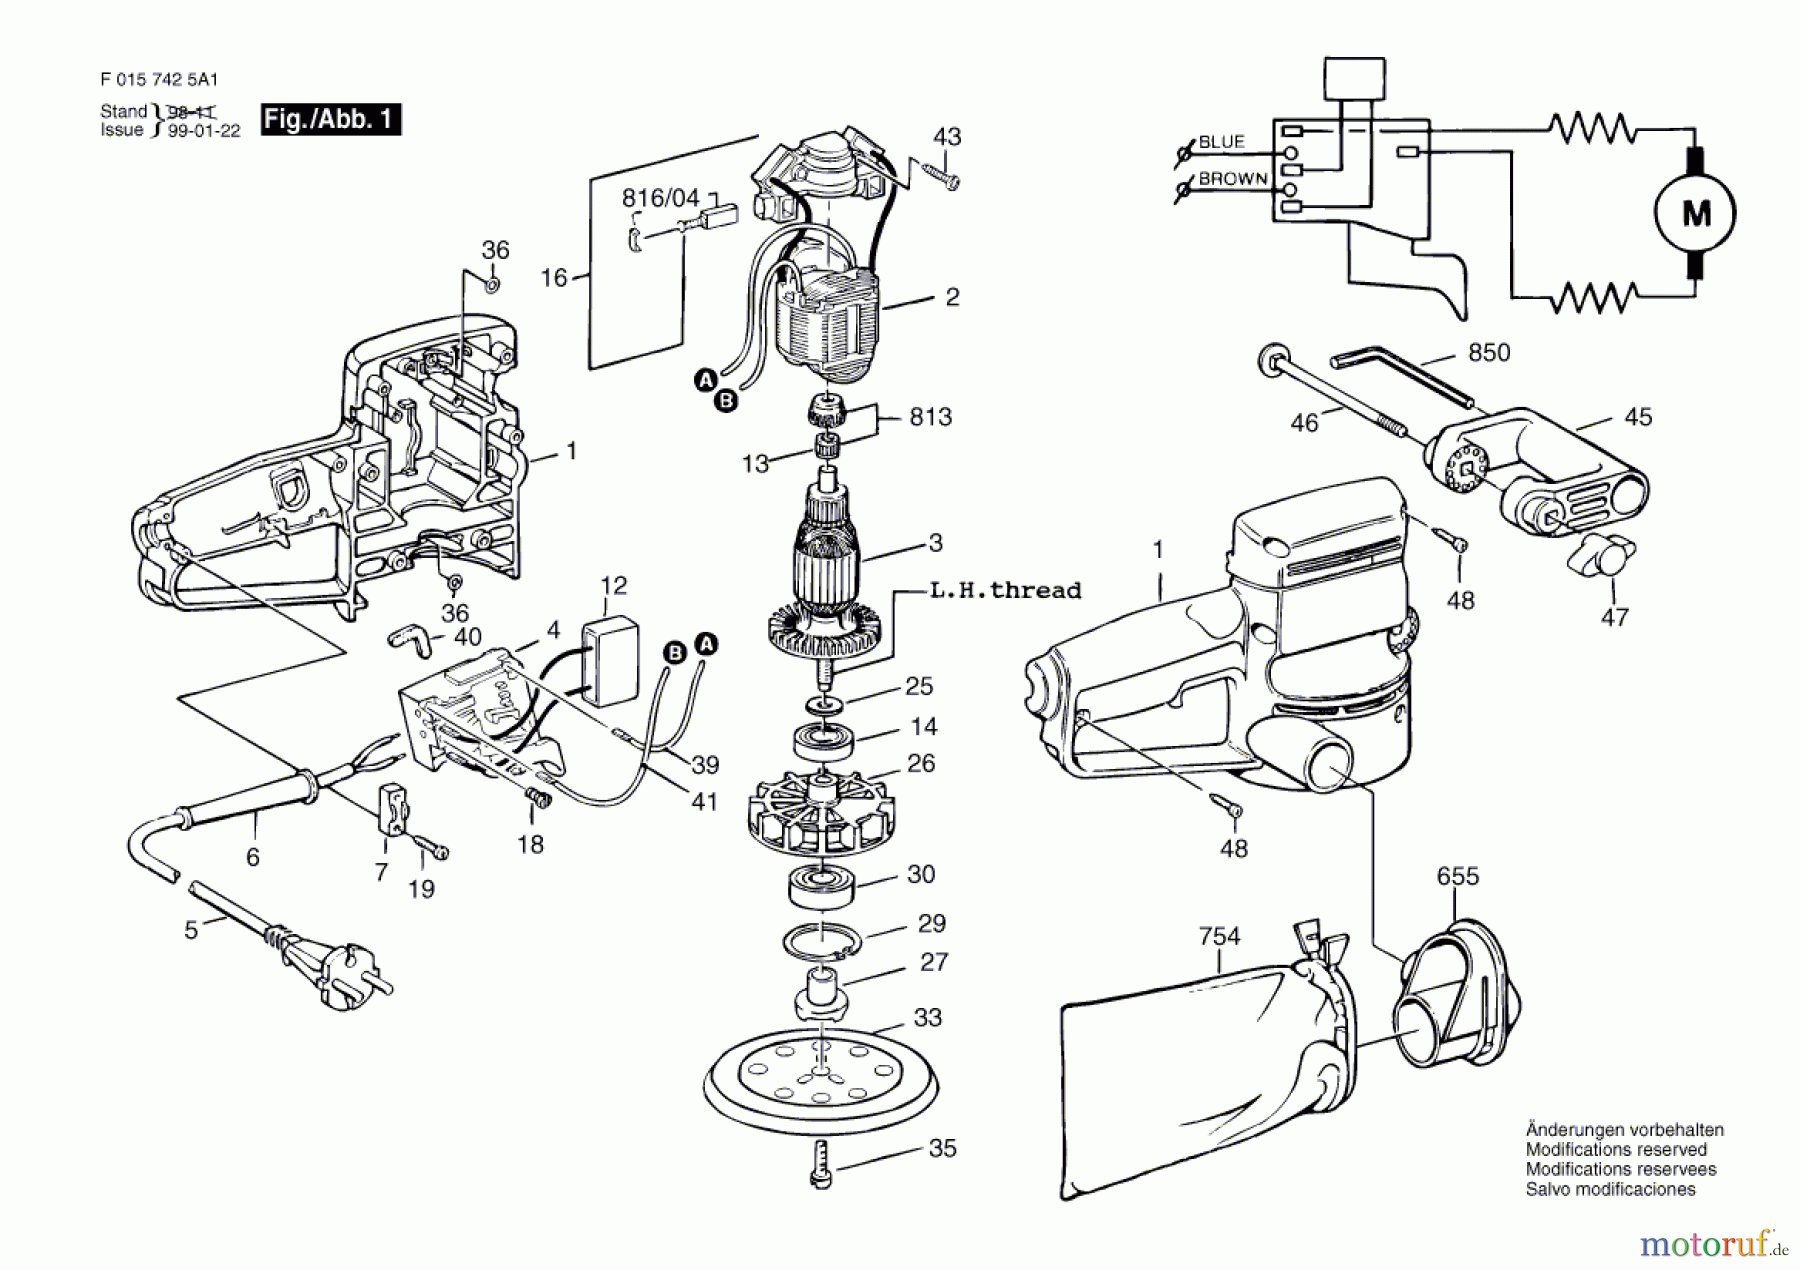  Bosch Werkzeug Hw-Exzenterschleifer 7425 Seite 1